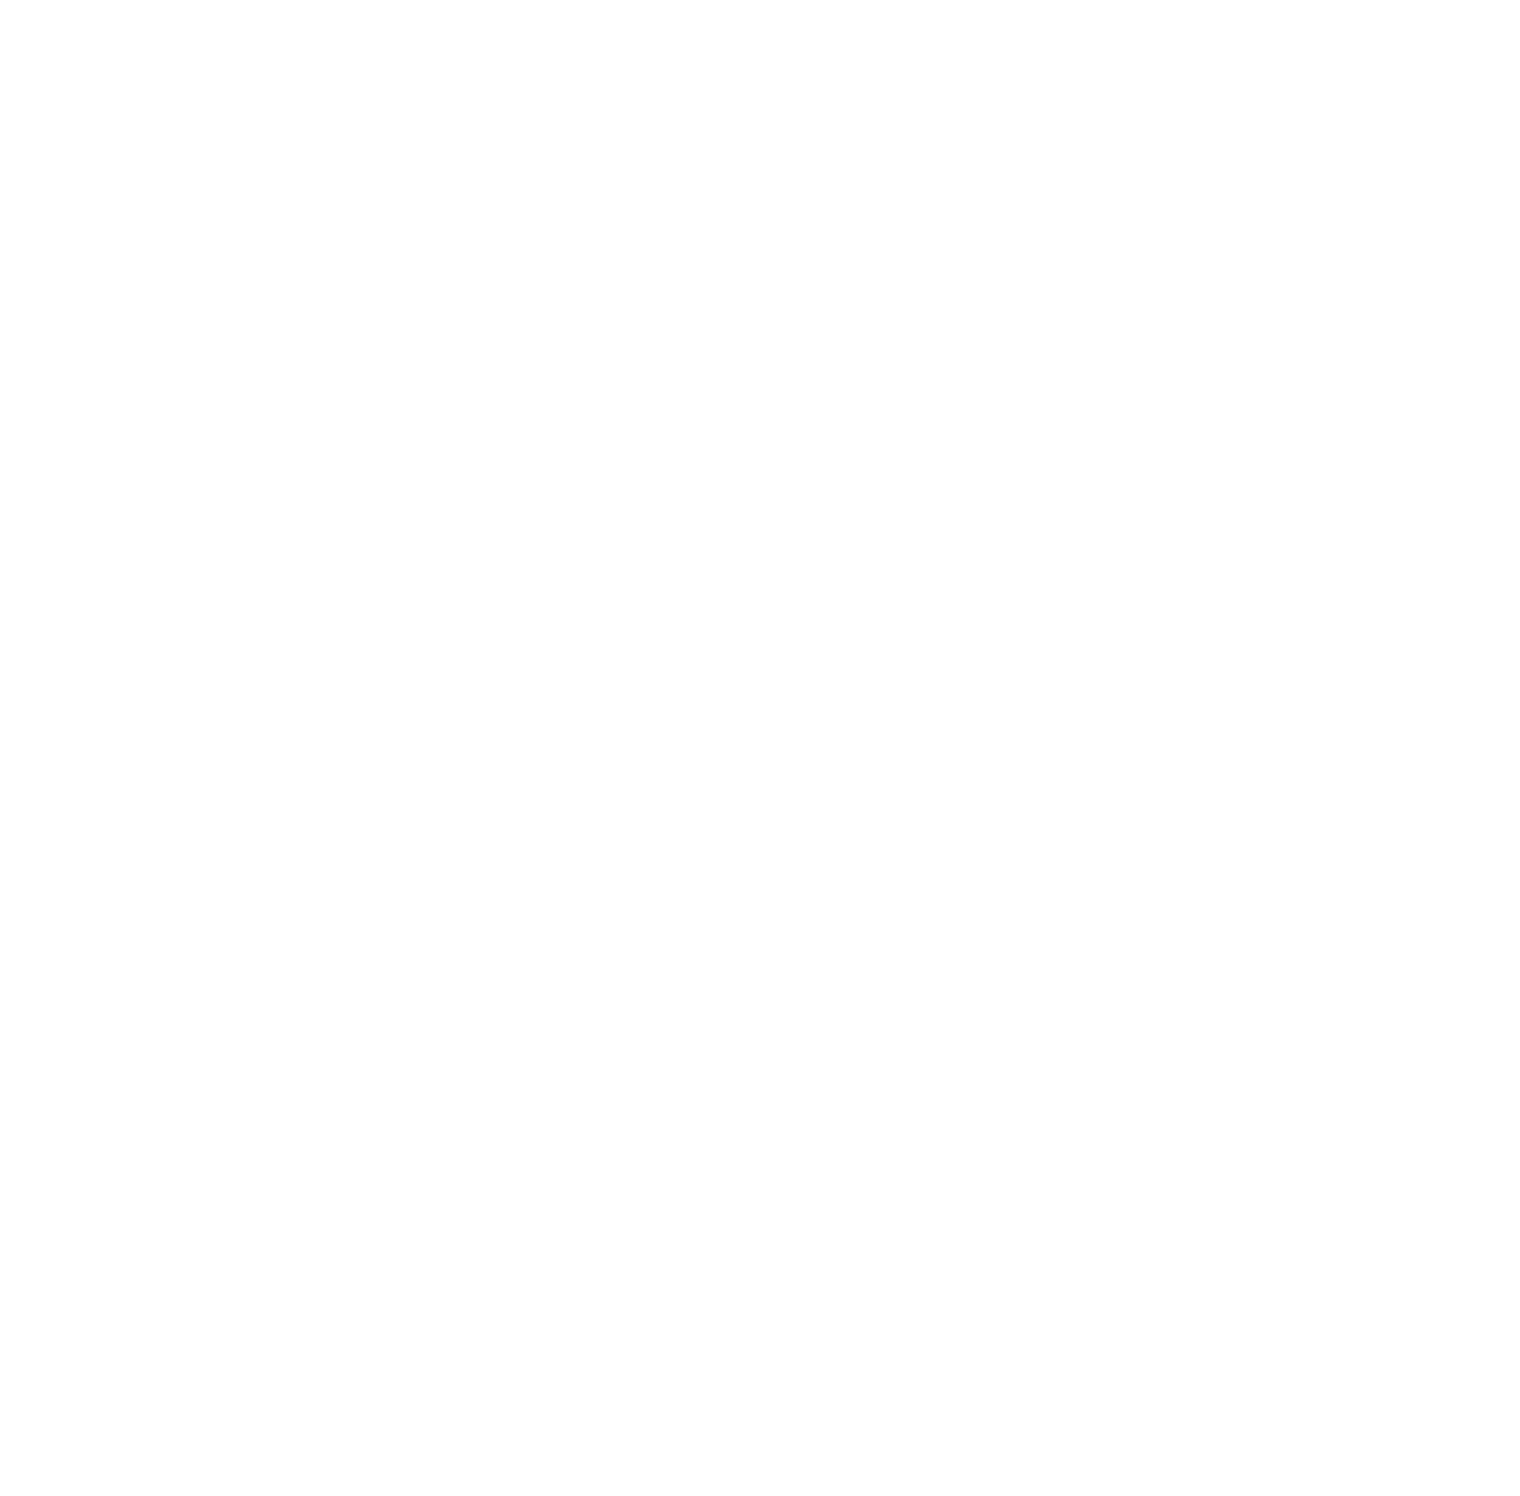 L'Occitane International logo for dark backgrounds (transparent PNG)